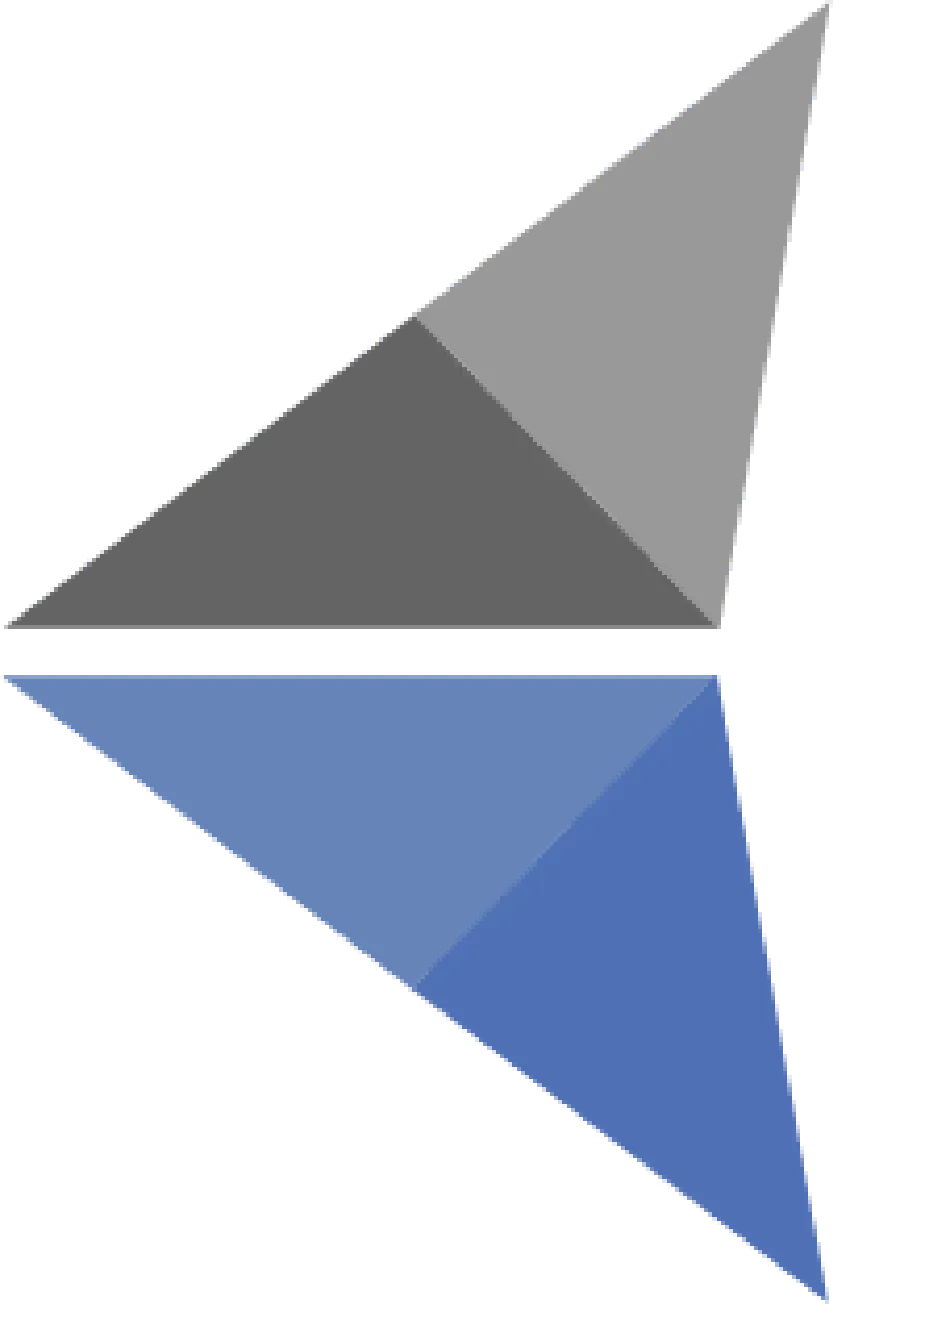 icono de human learning, una de las mejores plataformas virtuales para capacitación. Son dos triángulos, uno gris y uno azul.